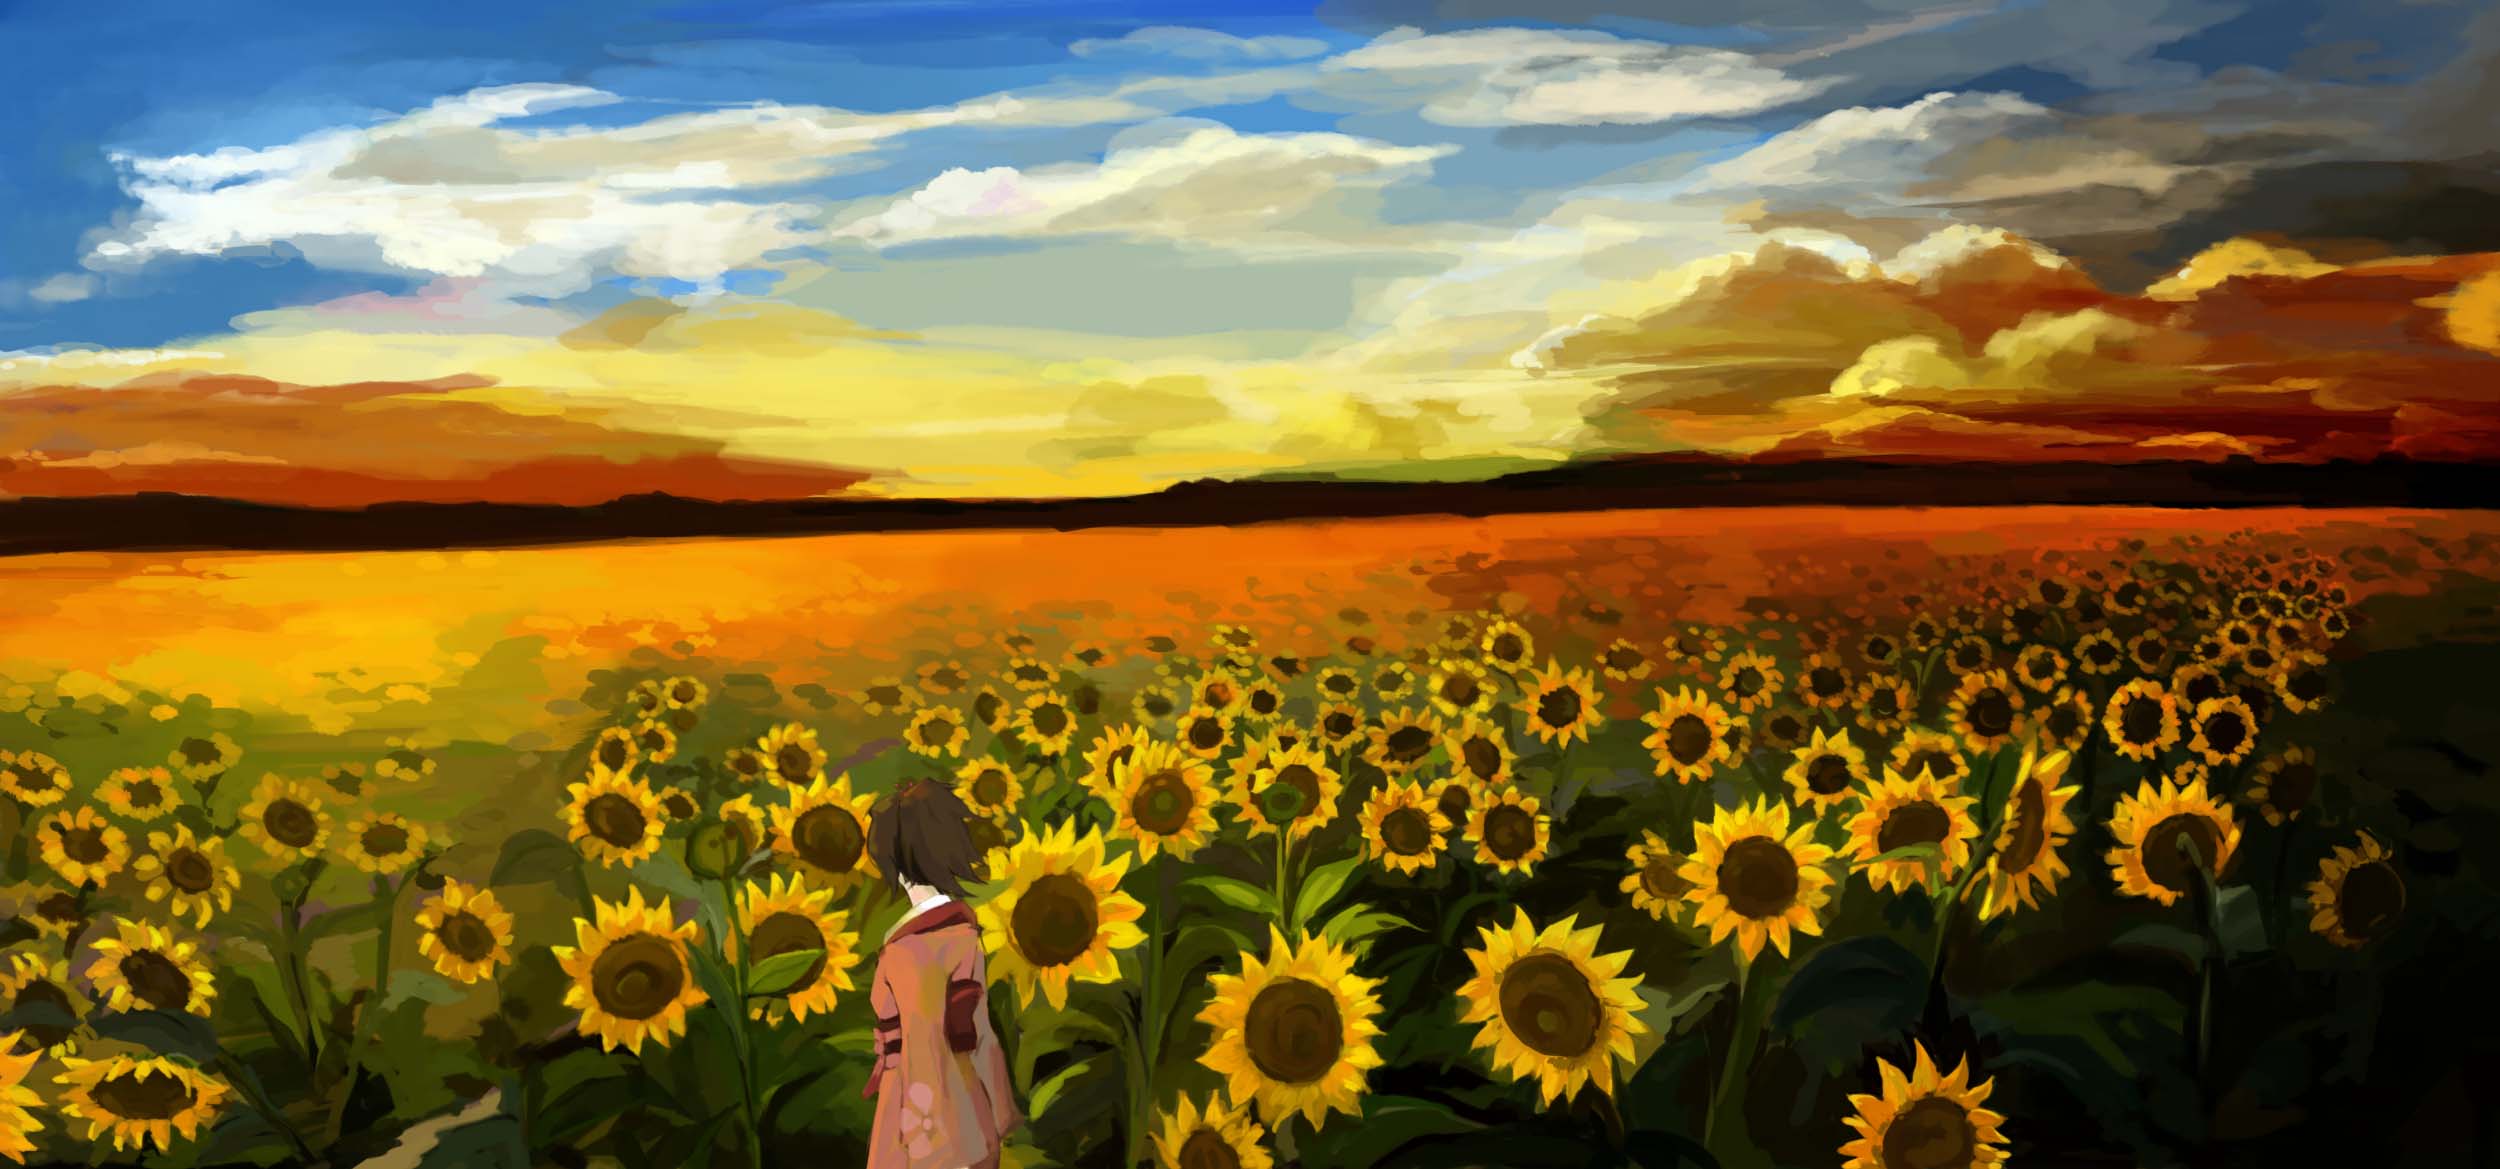 Sunflowers [Samurai Champloo]